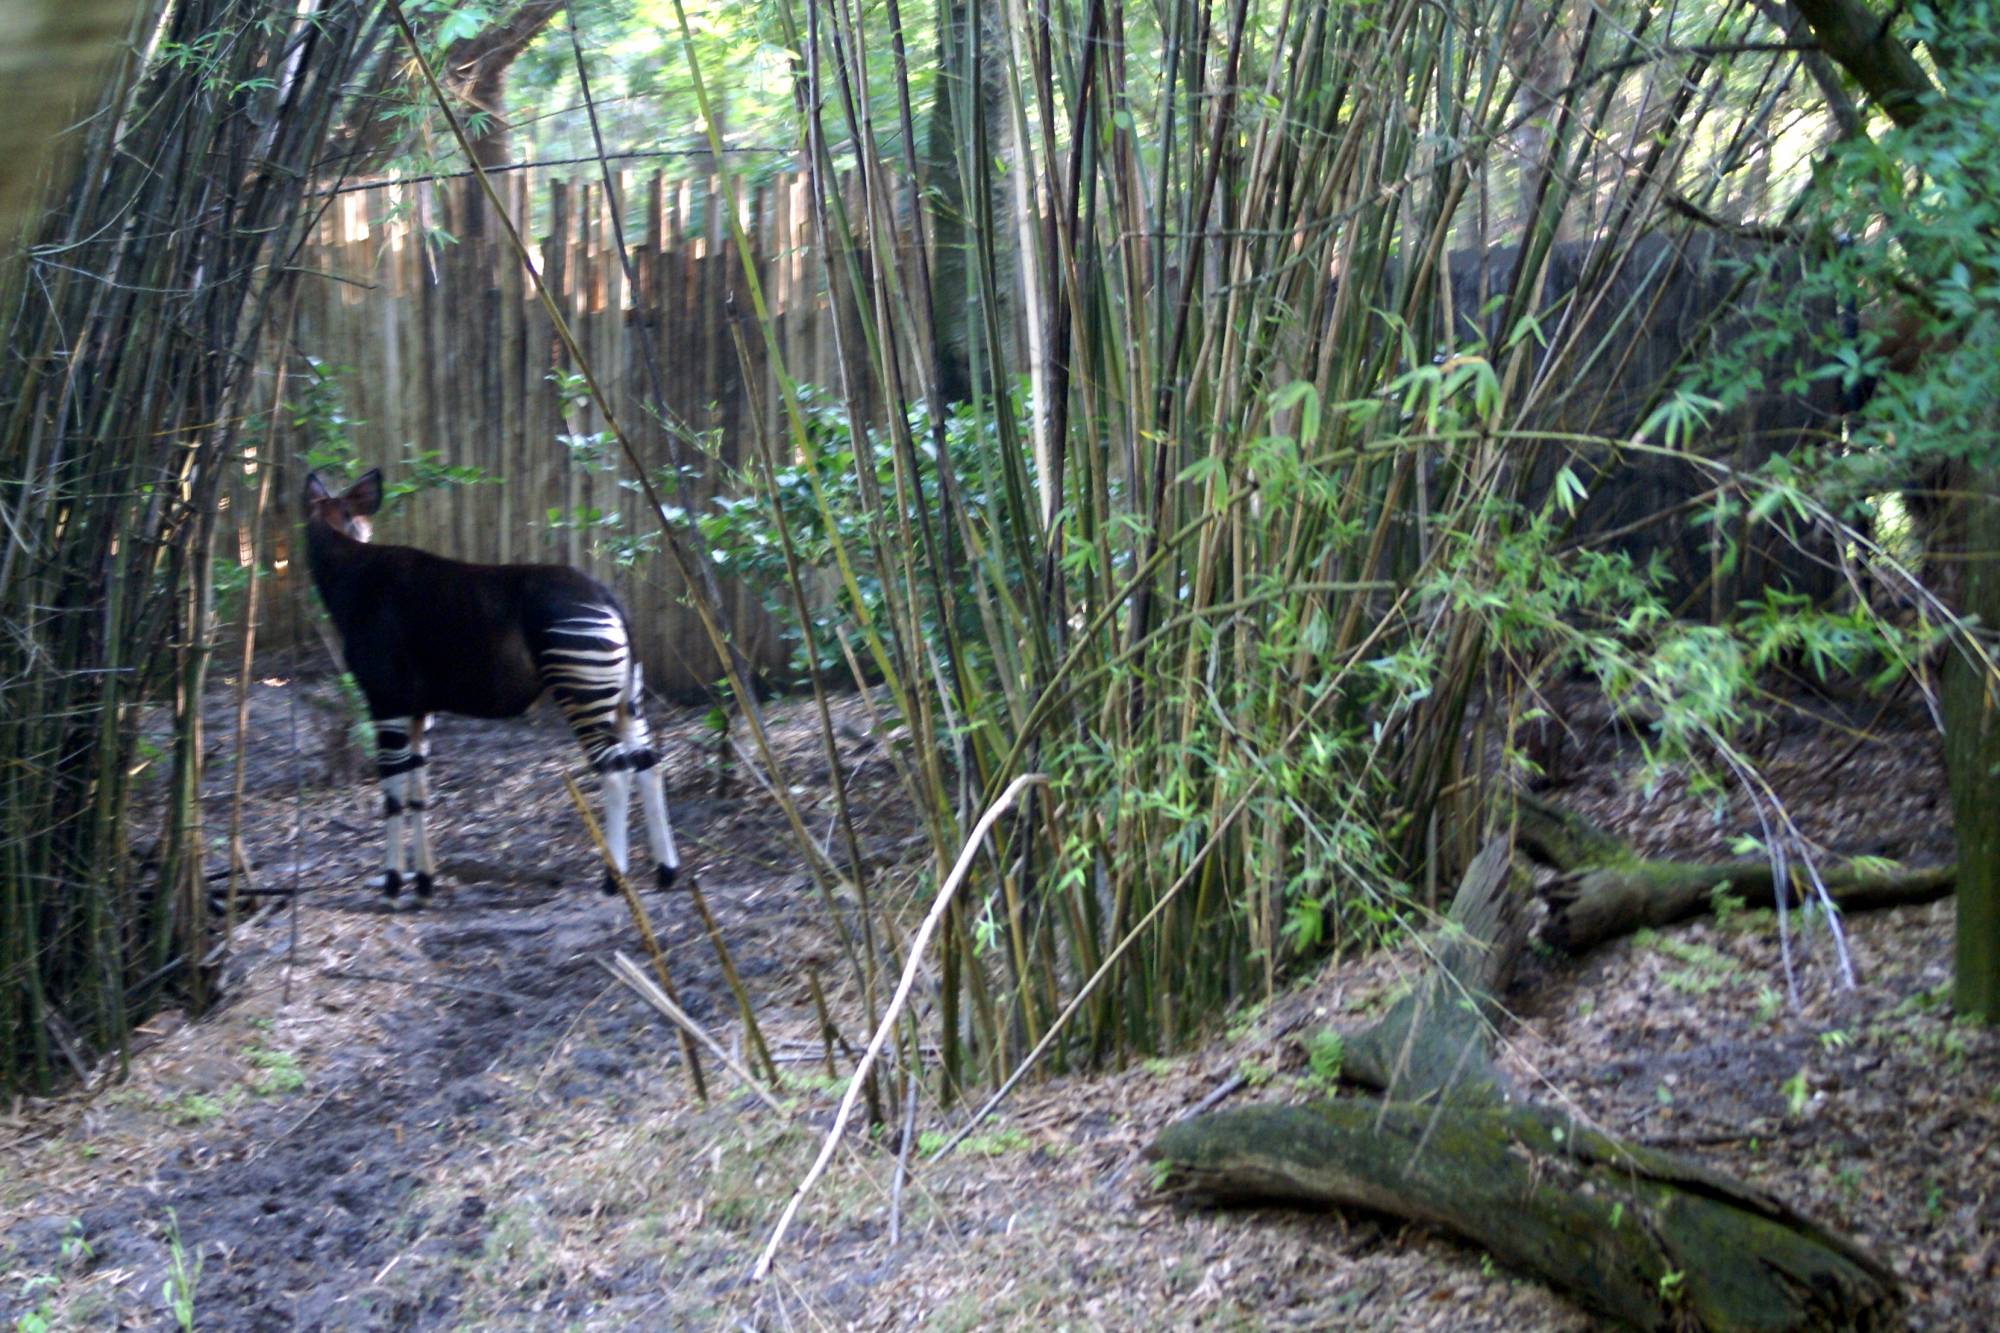 Okapi on the Sunrise Safari